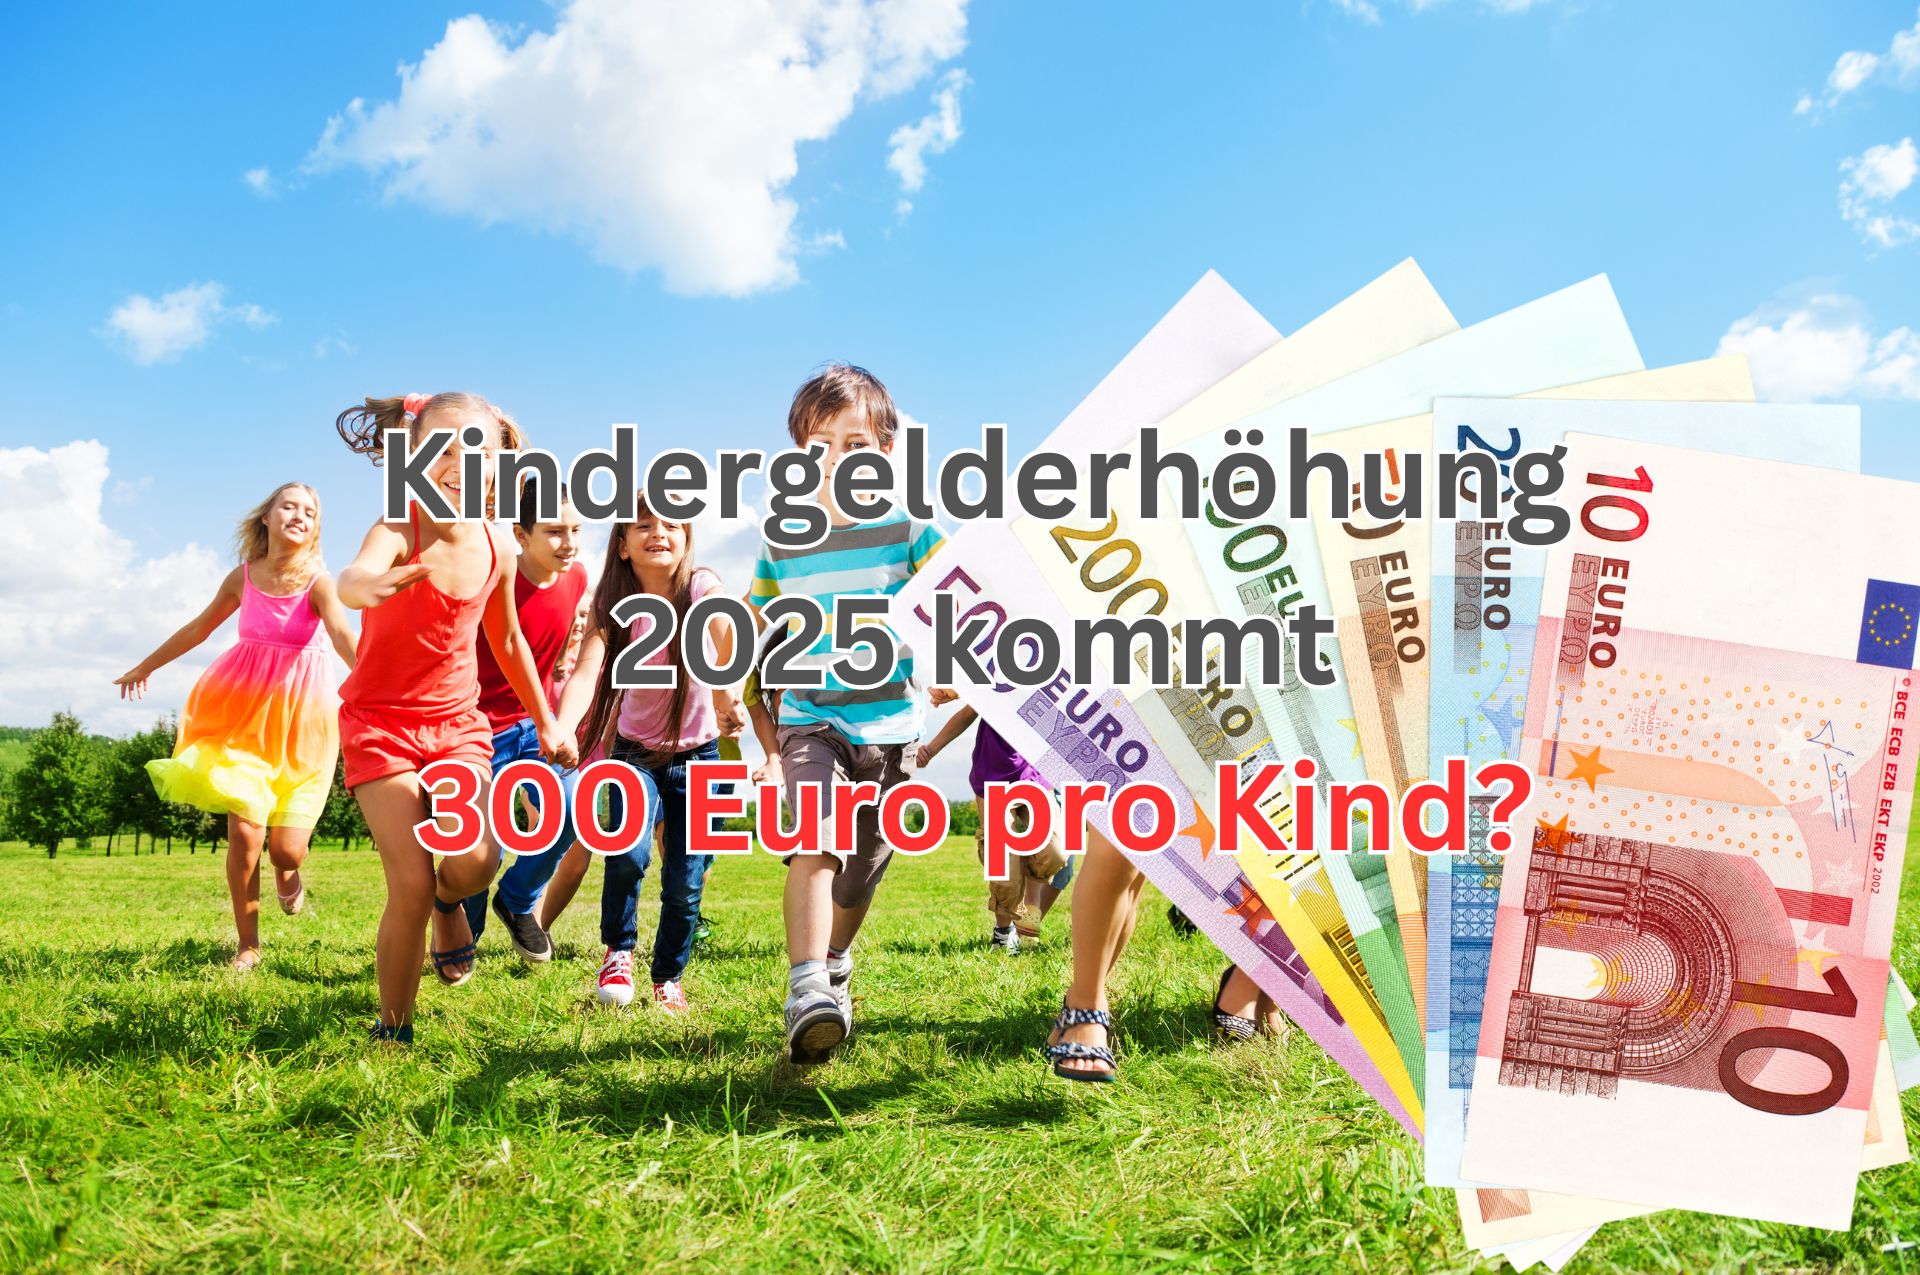 Auf welchen Betrag wird das Kindergeld 2025 erhöht werden? Auf 300 Euro?